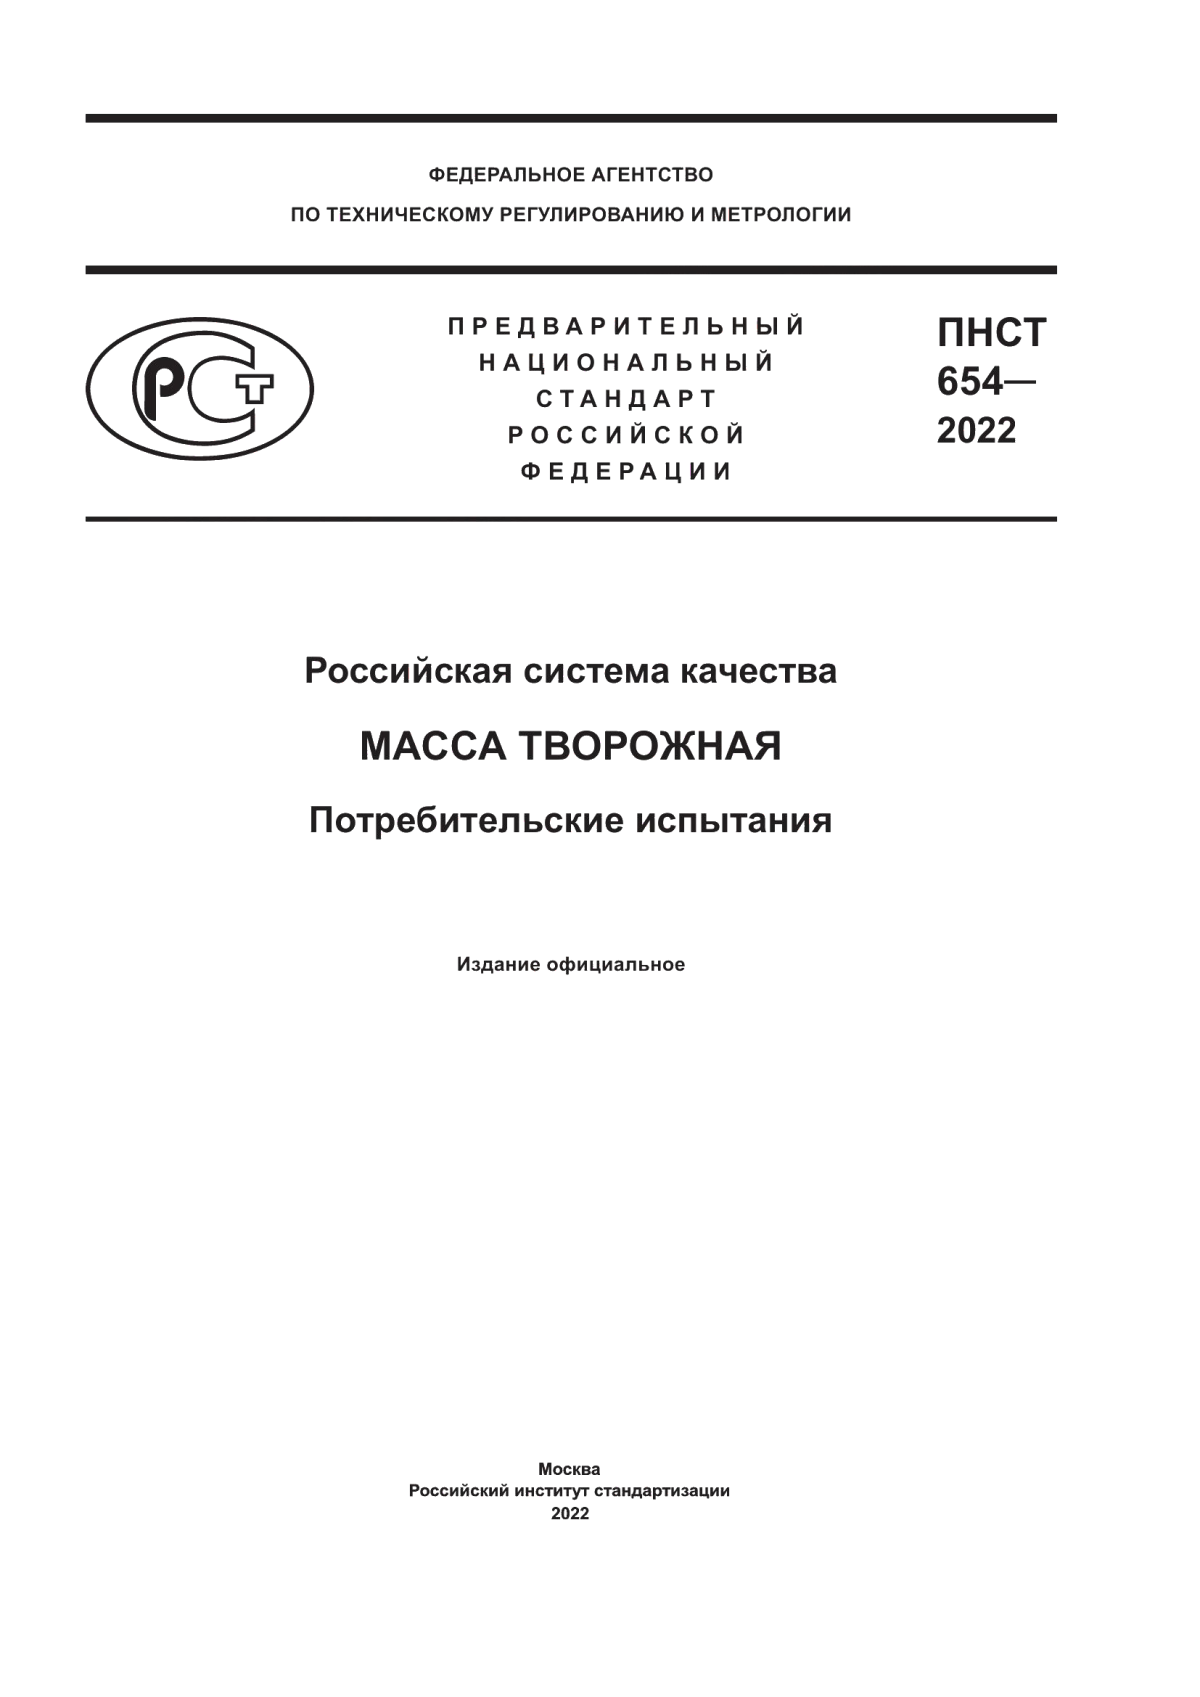 ПНСТ 654-2022 Российская система качества. Масса творожная. Потребительские испытания